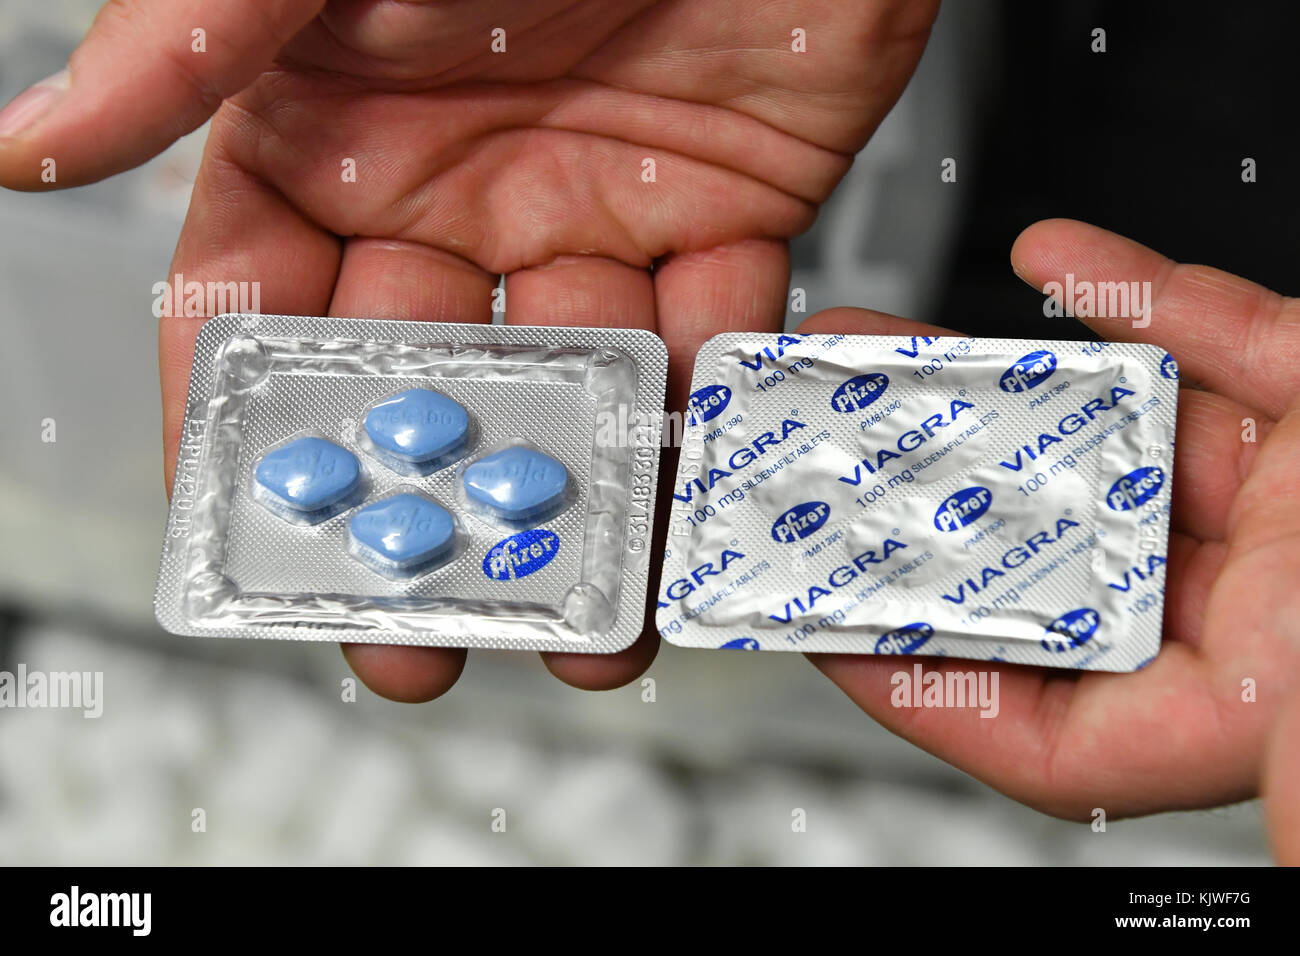 Viagra tablets immagini e fotografie stock ad alta risoluzione - Alamy